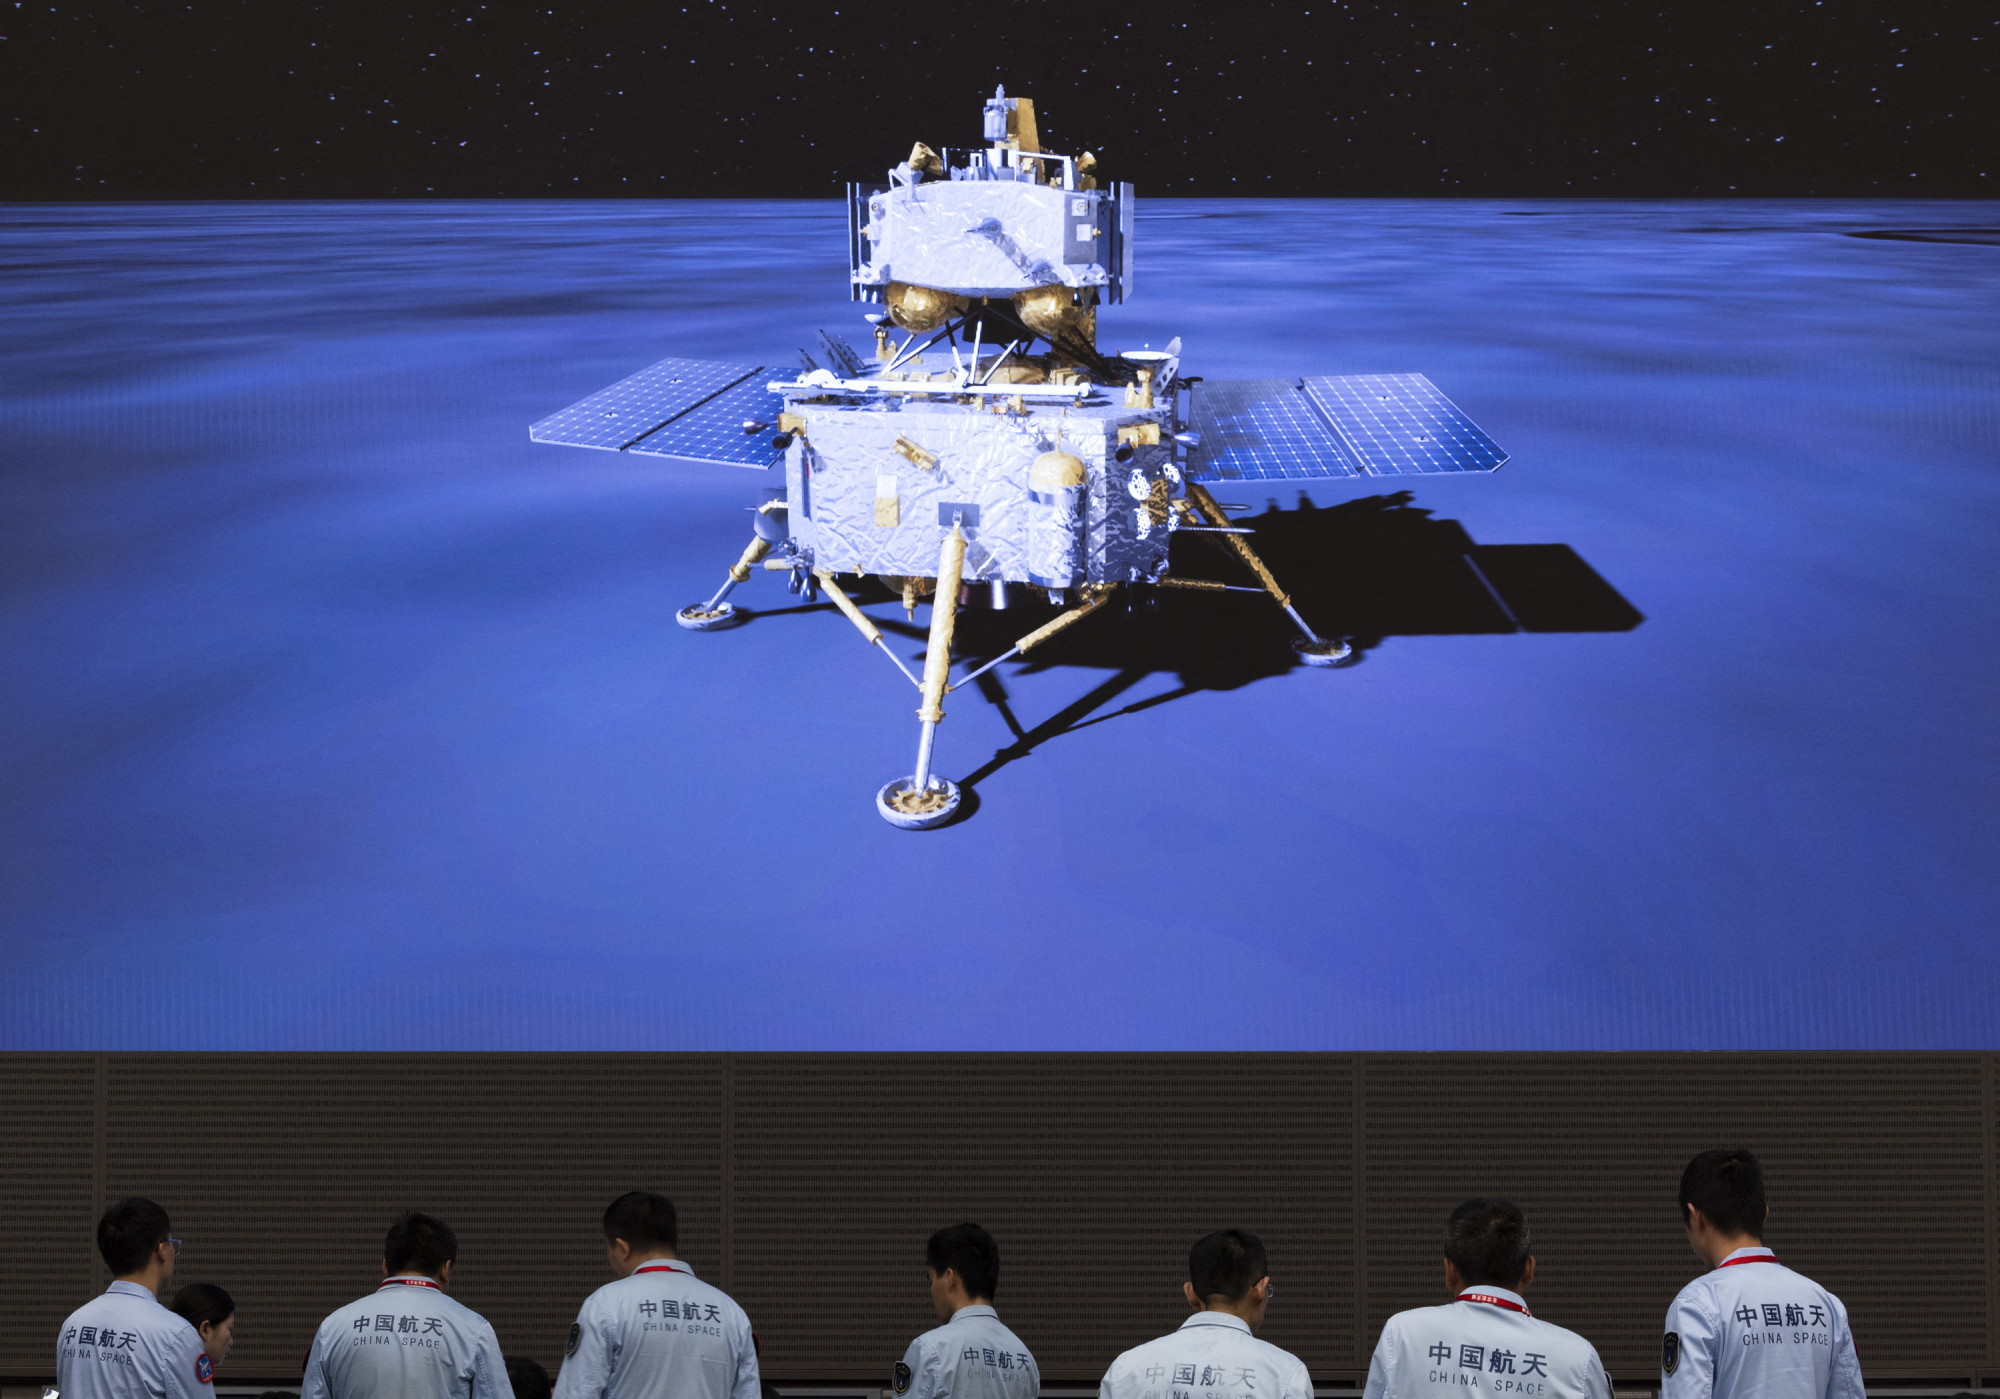 Vasárnapi landolása után akár már hétfőn visszaindulhat a Holdról a kínai Csang-o–6